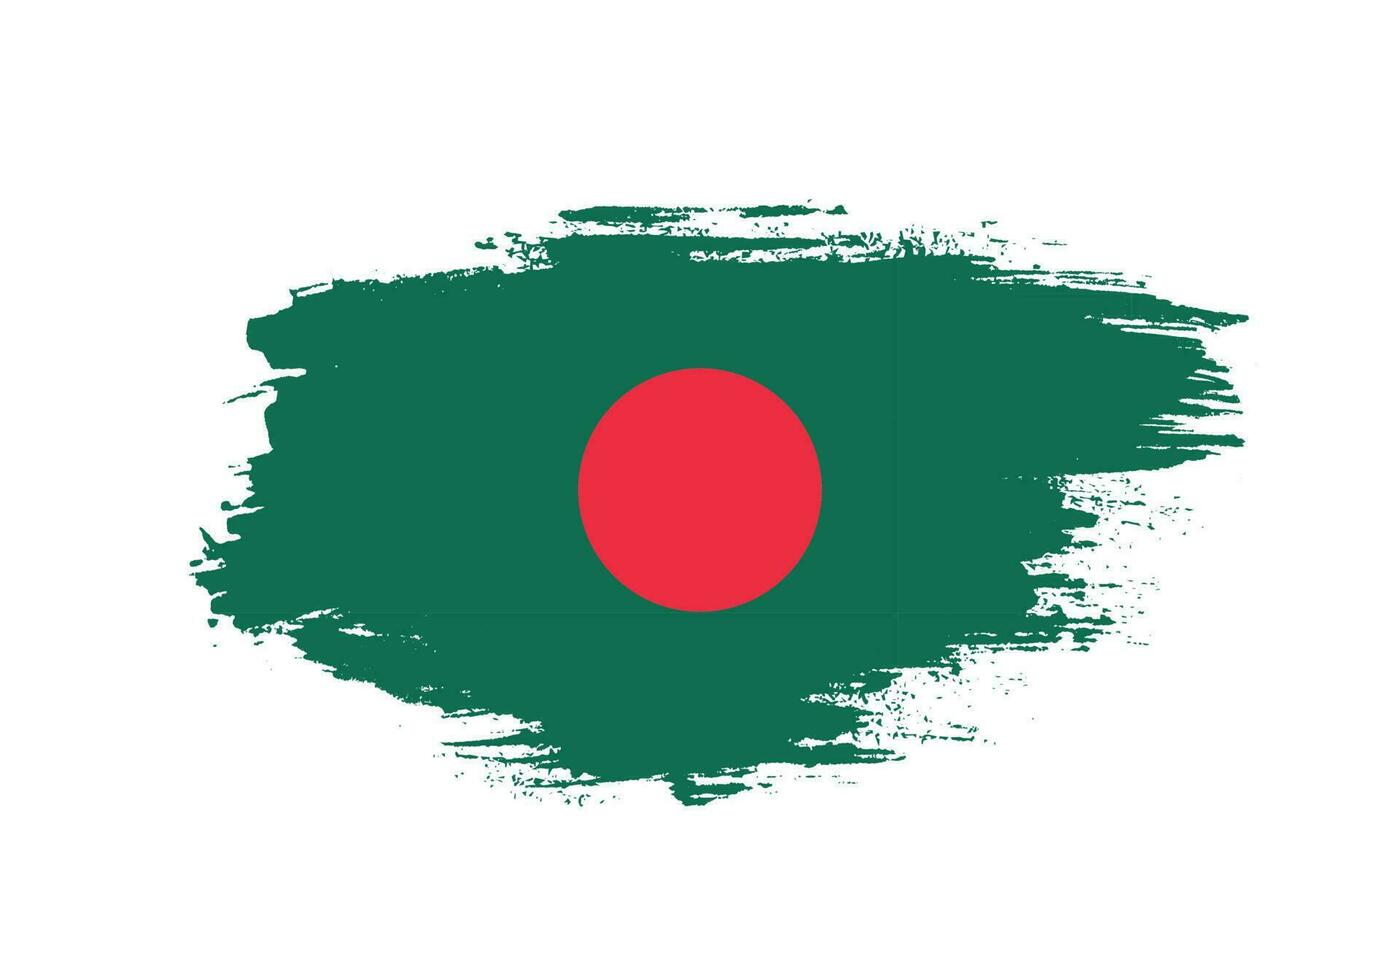 verf inkt borstel beroerte vrij Bangladesh vlag vector